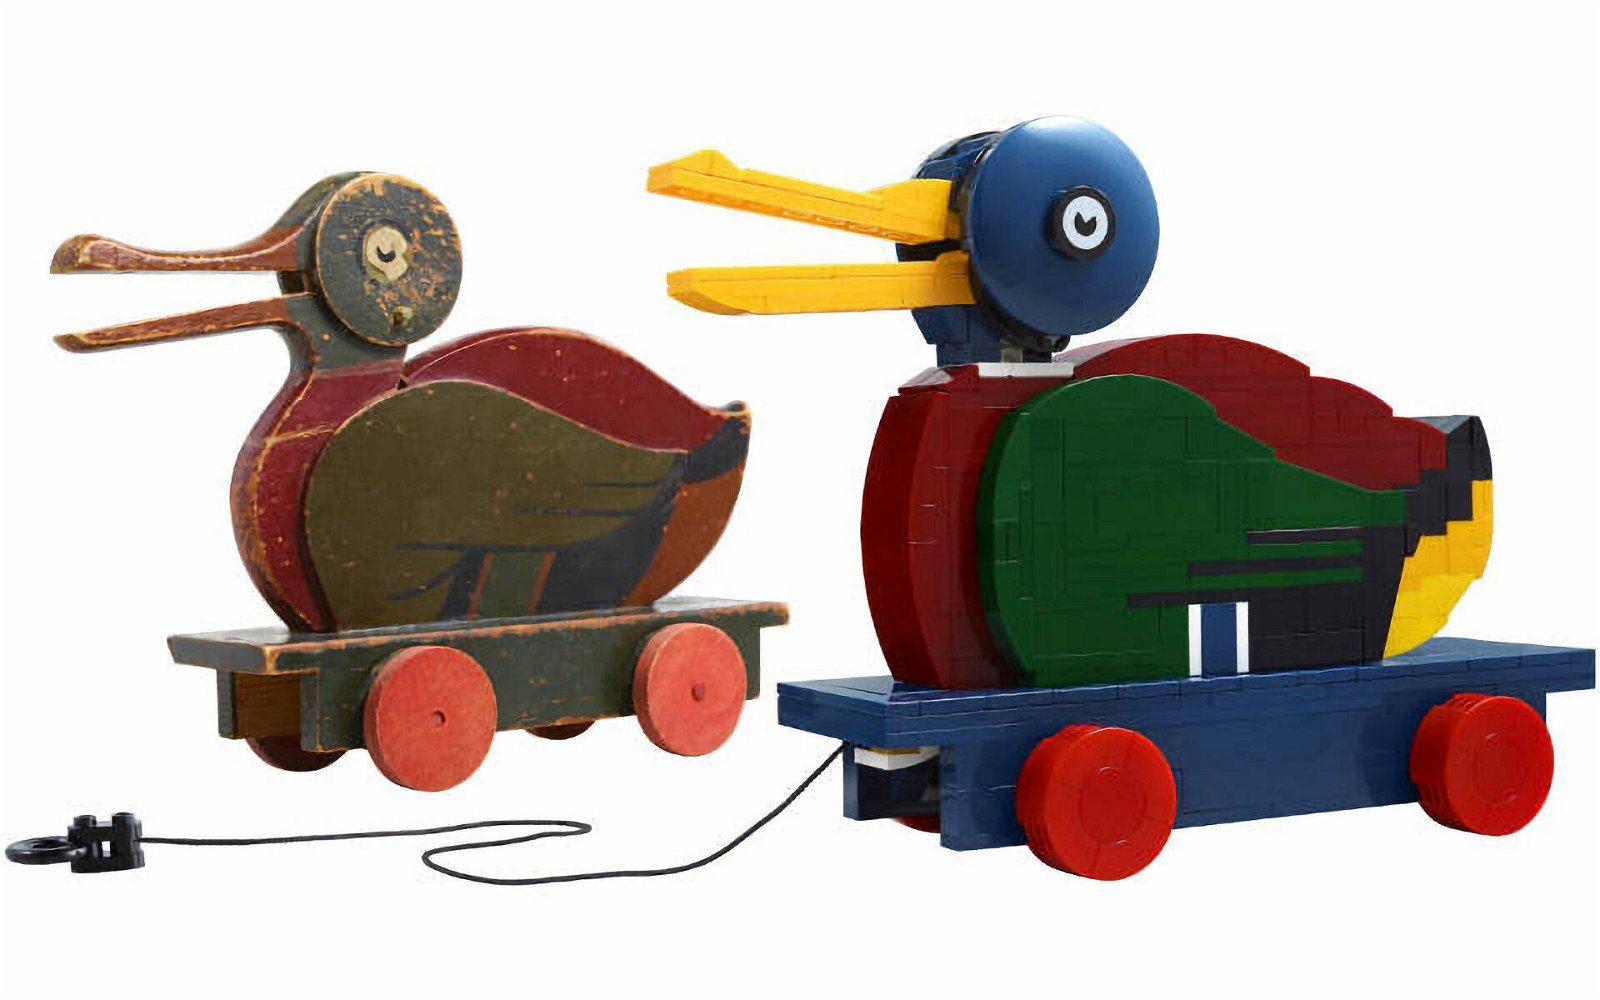 Immagine di LEGO MANIA. Costruiamo insieme le "Wooden Duck", simbolo della storia di LEGO Group